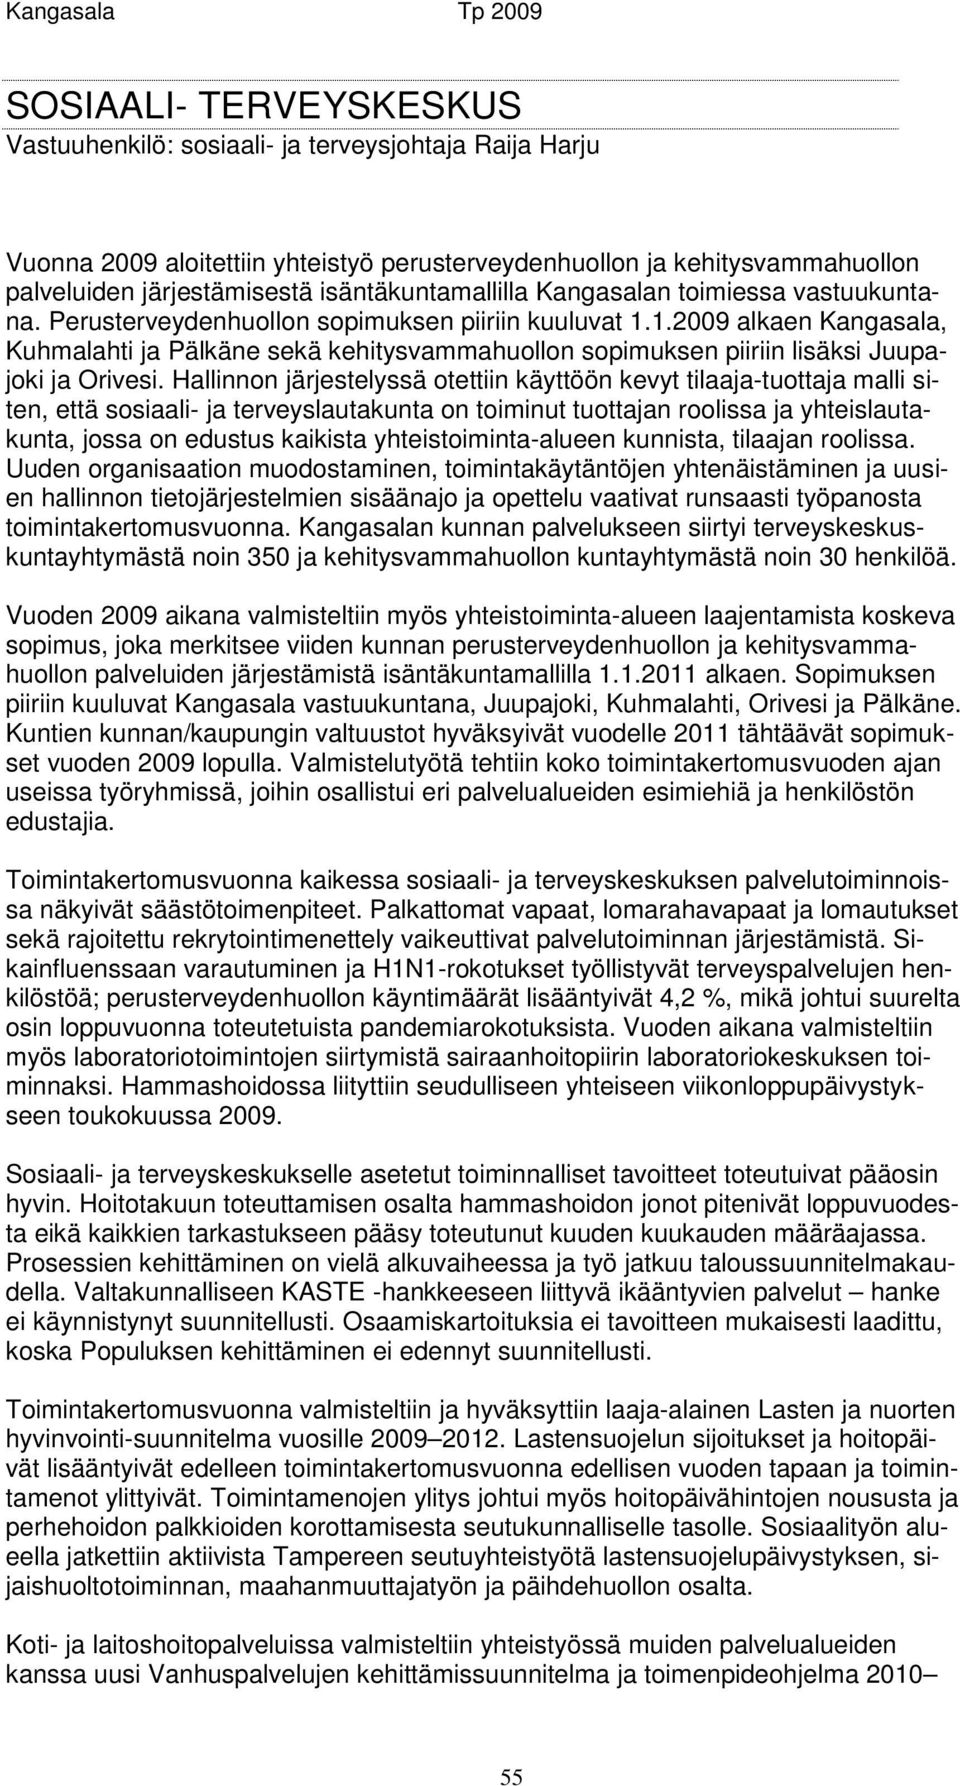 1.2009 alkaen Kangasala, Kuhmalahti ja Pälkäne sekä kehitysvammahuollon sopimuksen piiriin lisäksi Juupajoki ja Orivesi.